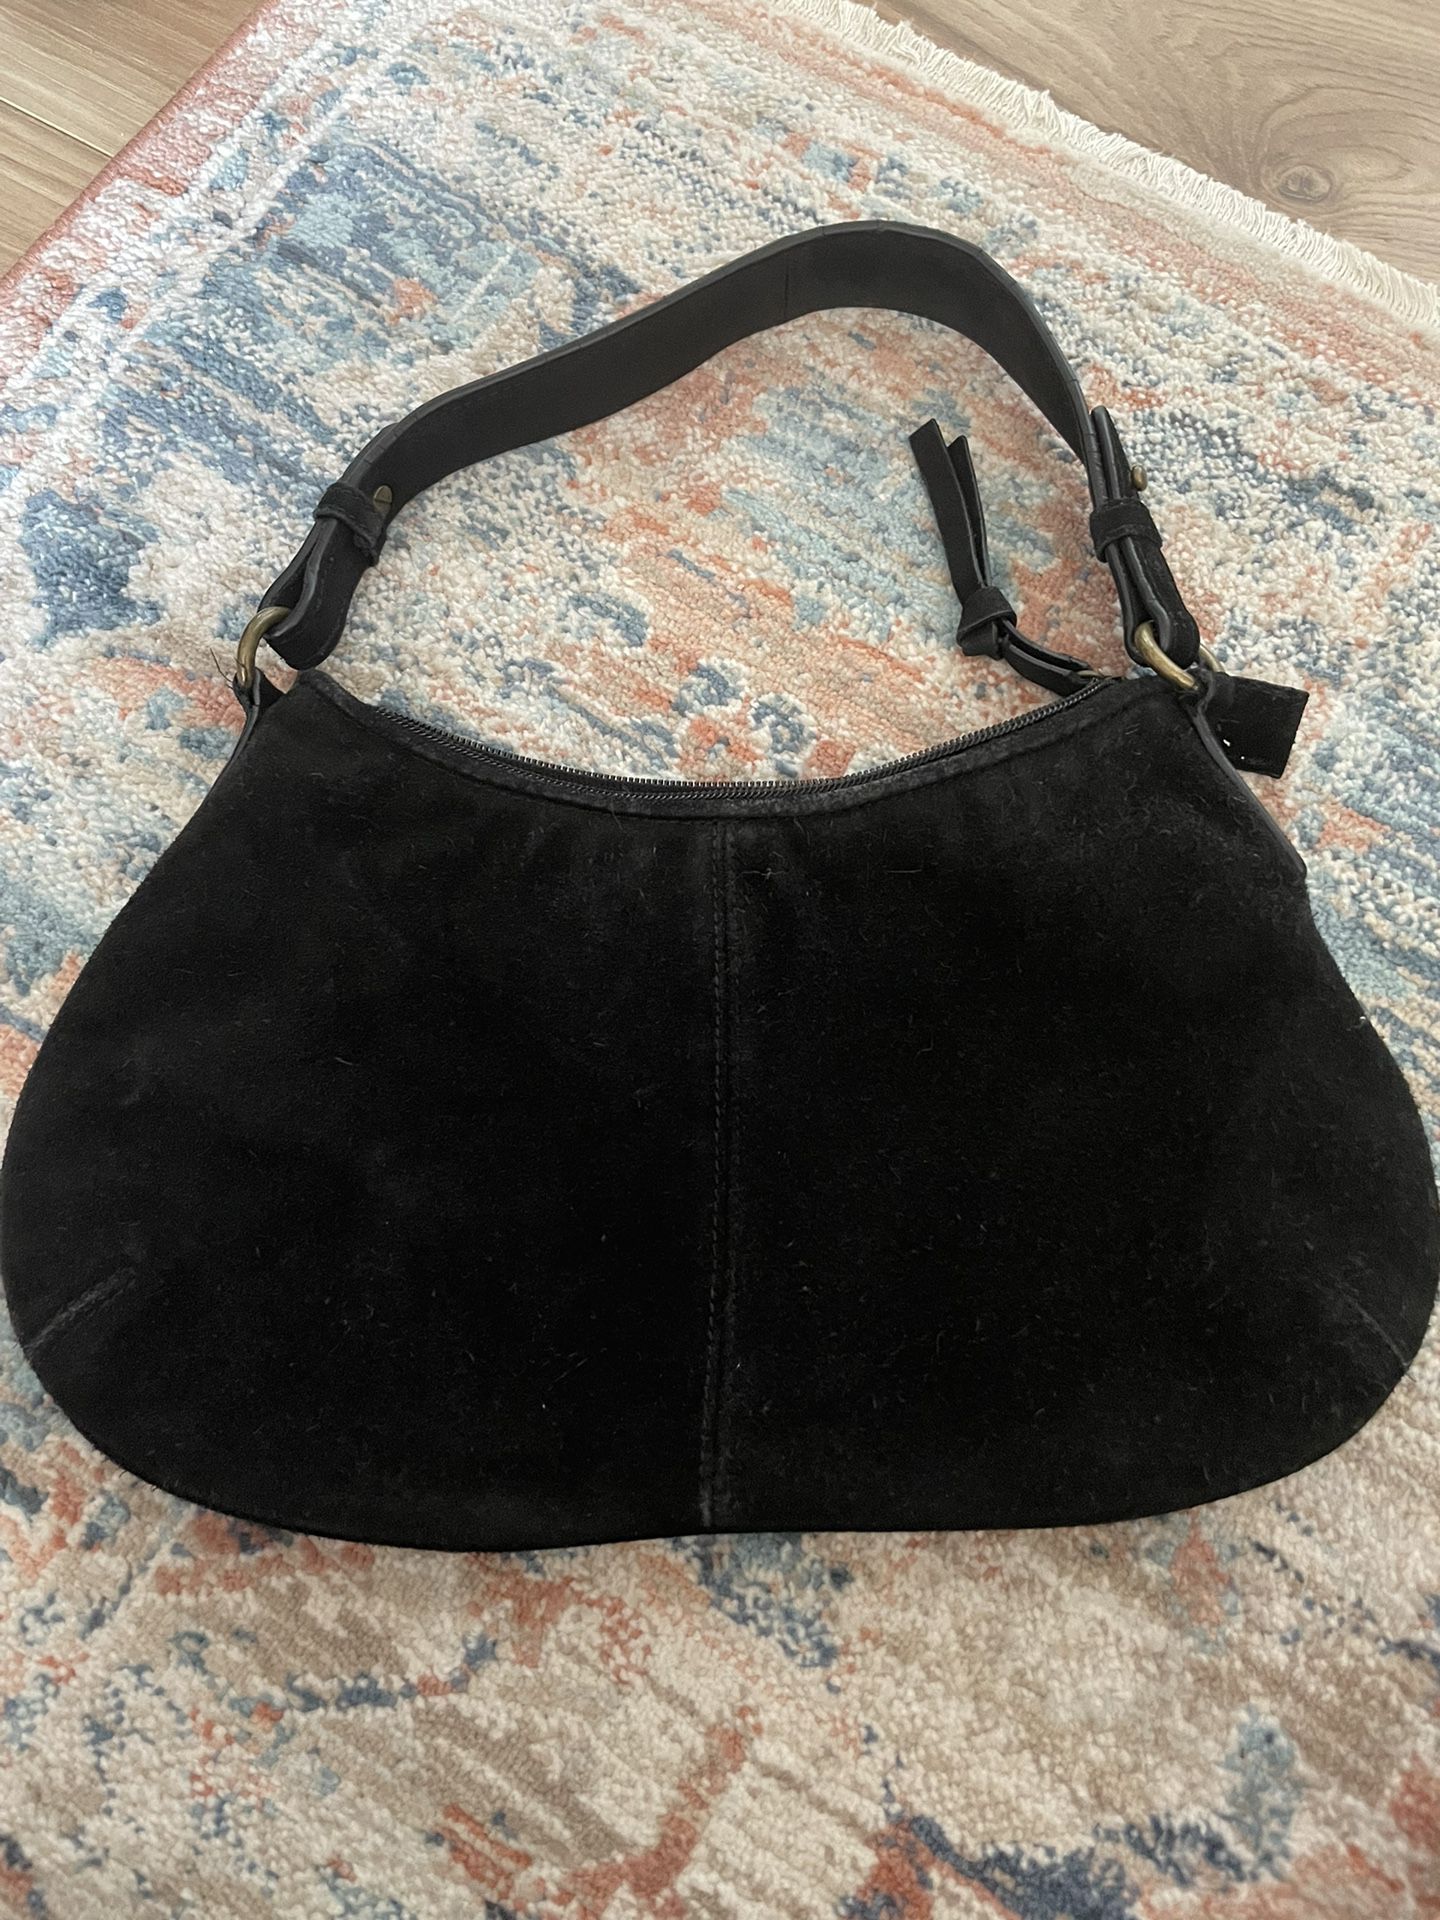 Black Suede Handbag